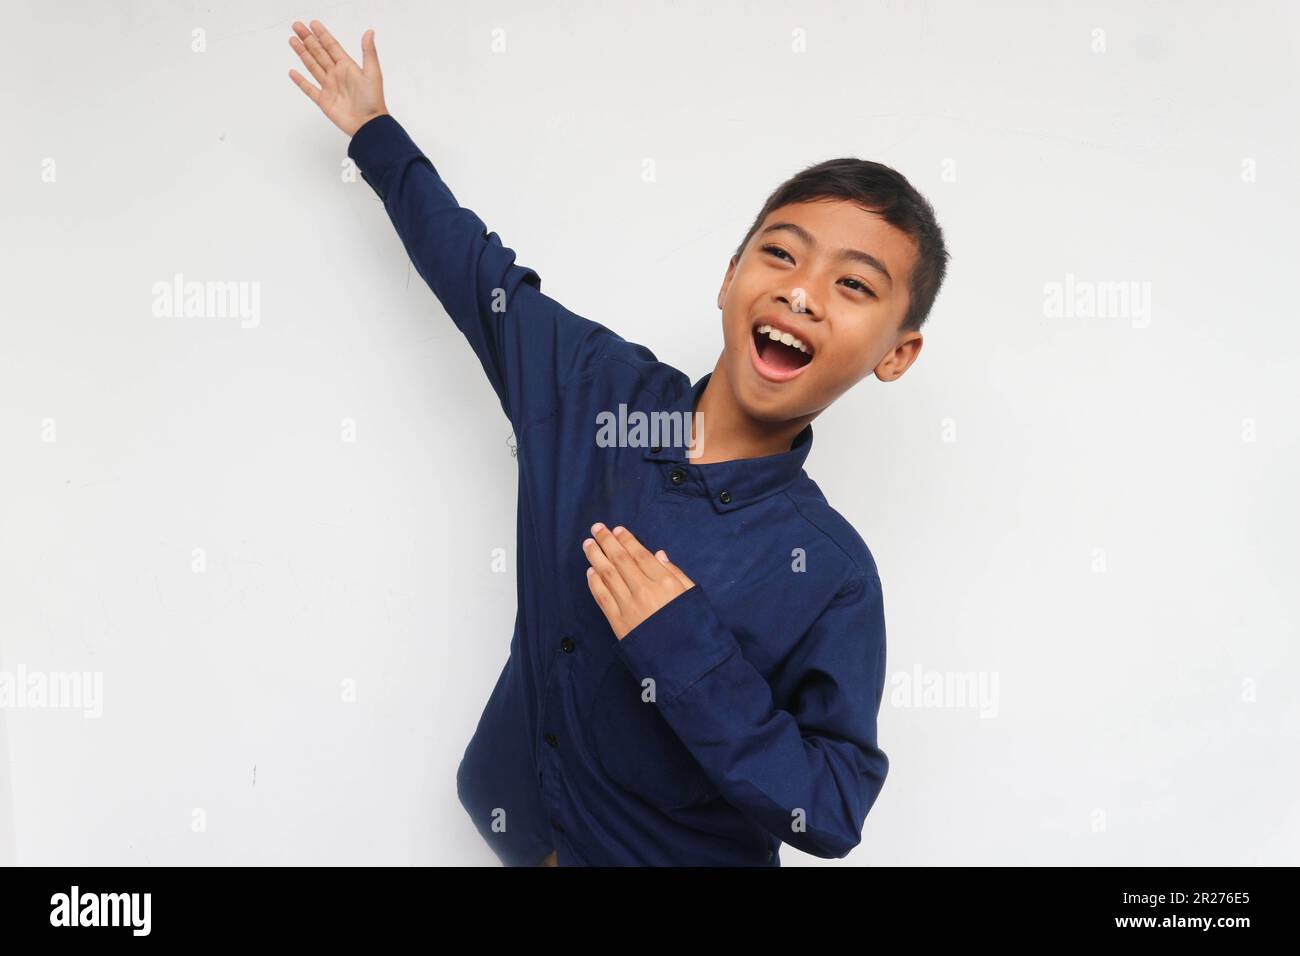 Feliz niño asiático manos arriba brazos levantados de la felicidad aislado en fondo blanco, concepto de éxito ganador de niño emocionado Foto de stock